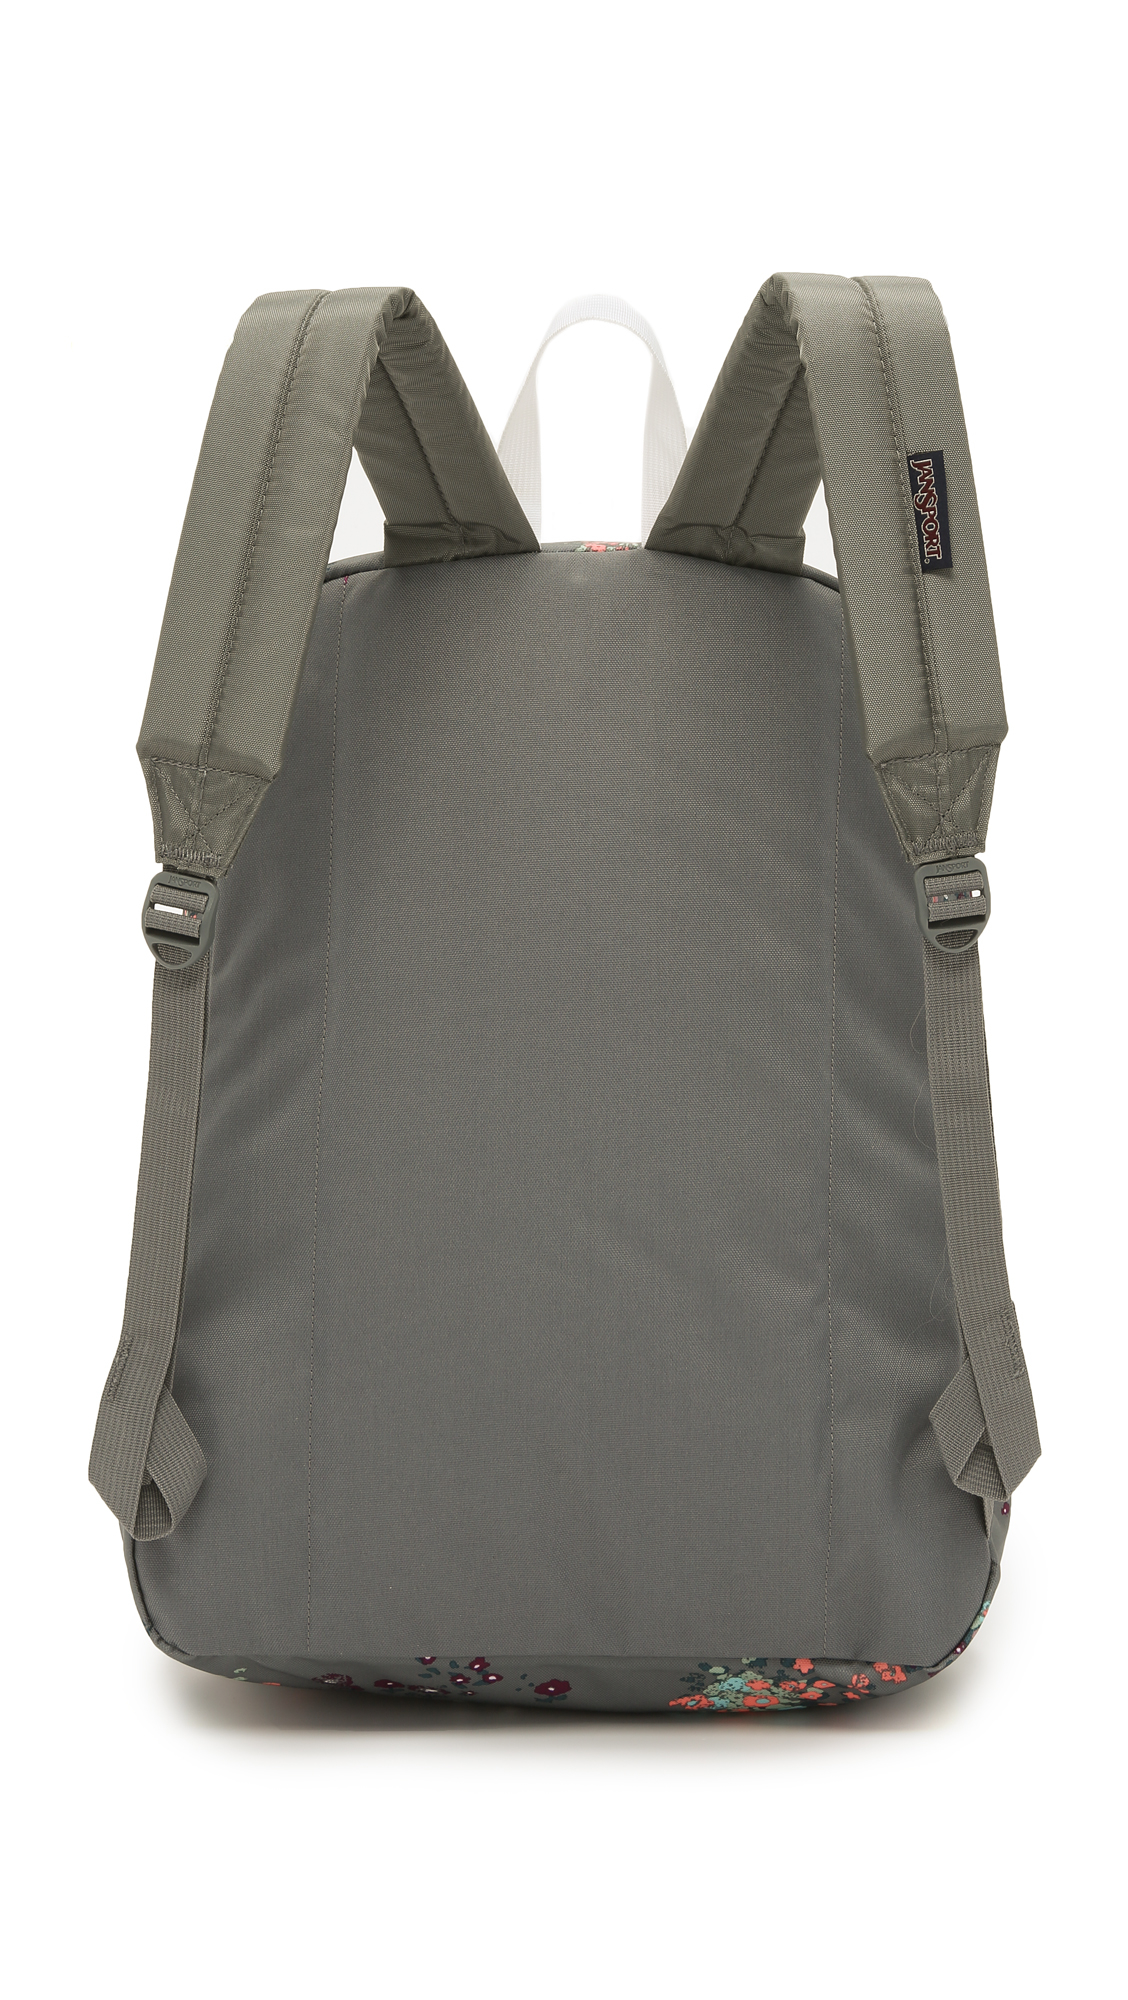 Lyst - Jansport Superbreak Backpack - Shady Grey Sprinkled Floral in Gray